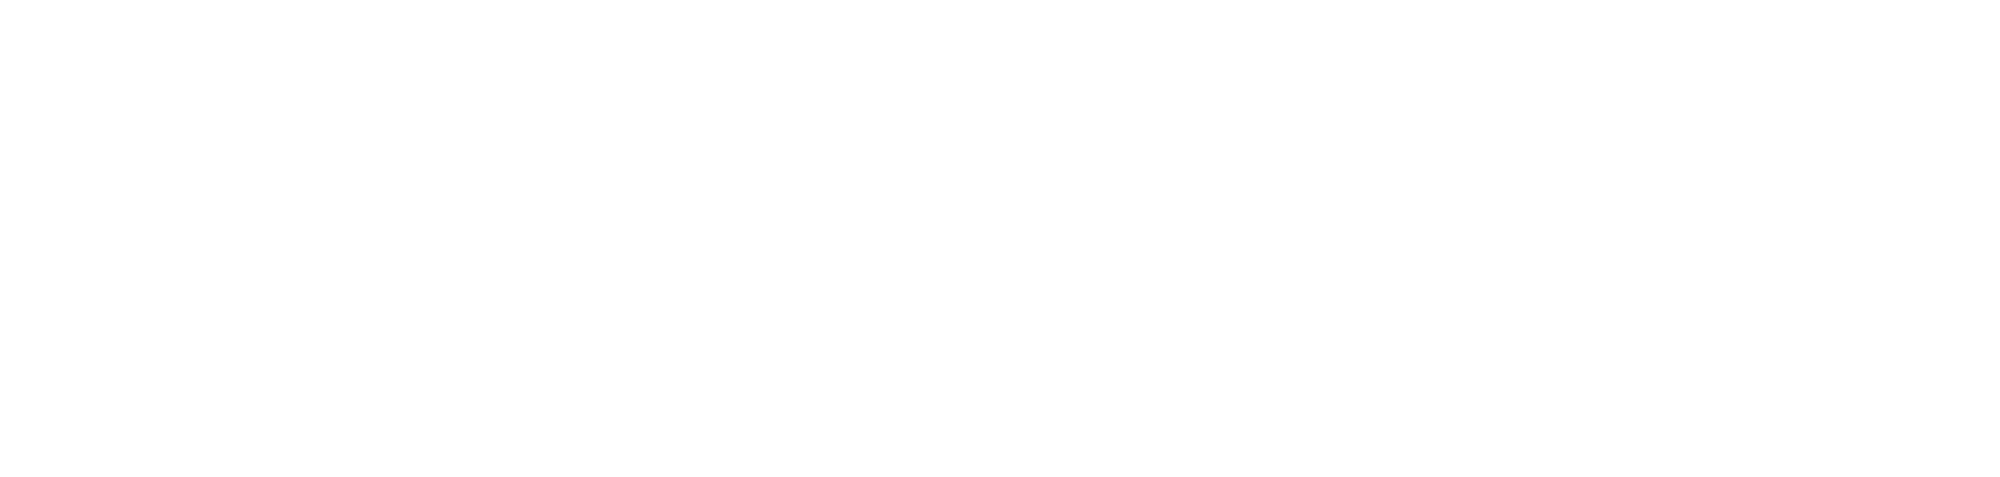 UVU MBA Silicon Slopes Logo White